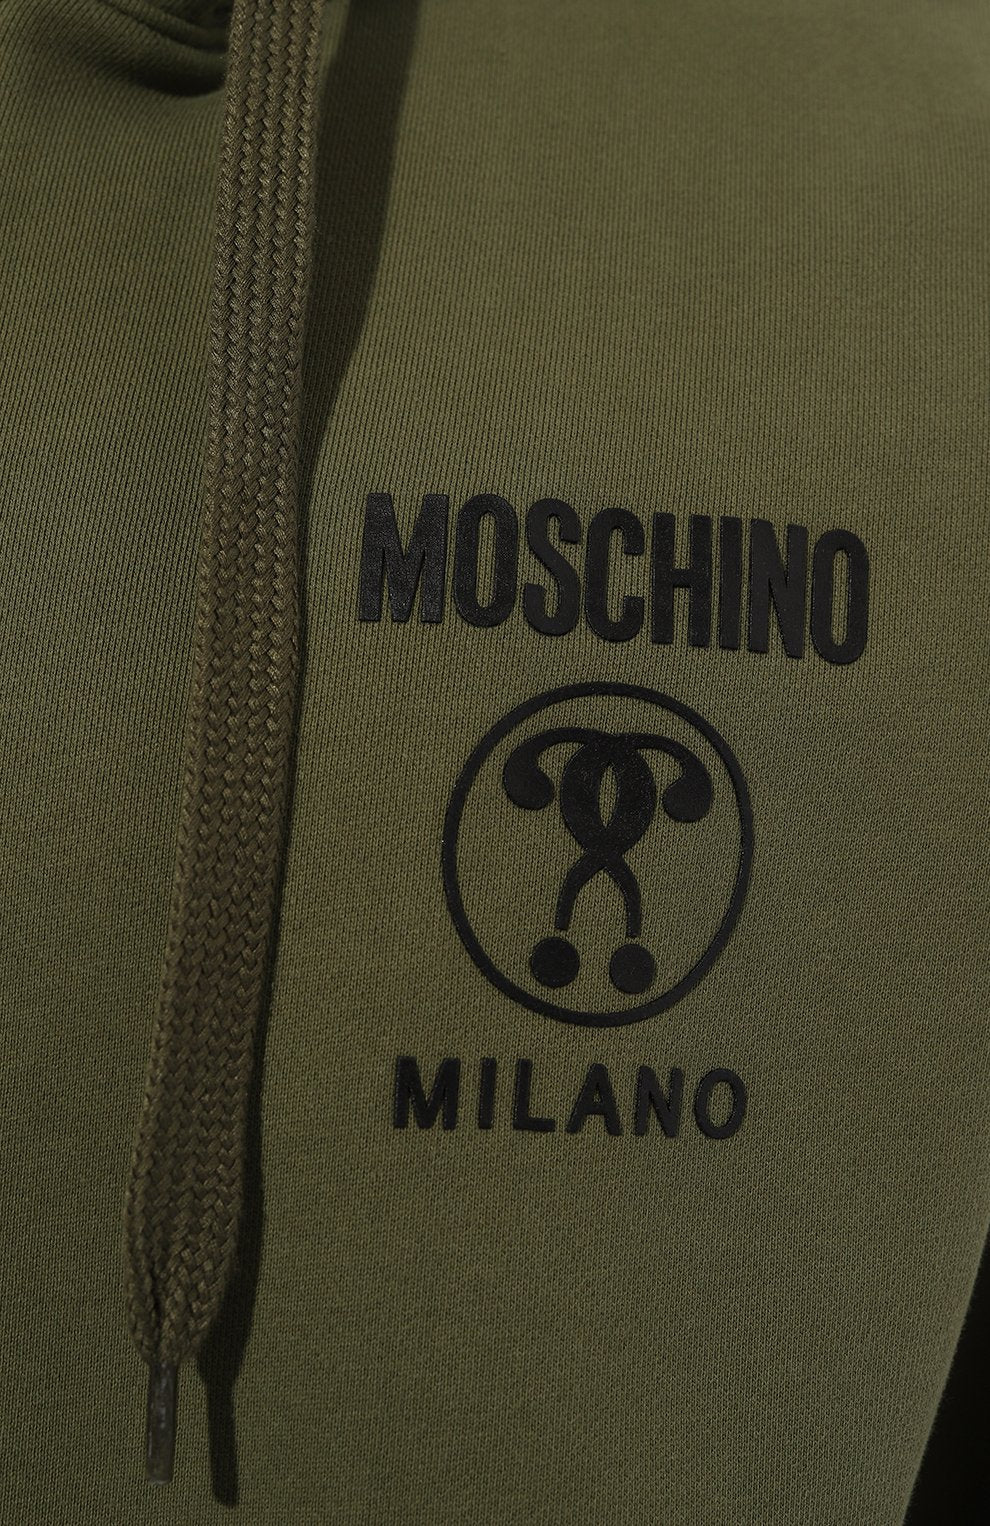 Moschino Cotton sweatshirt